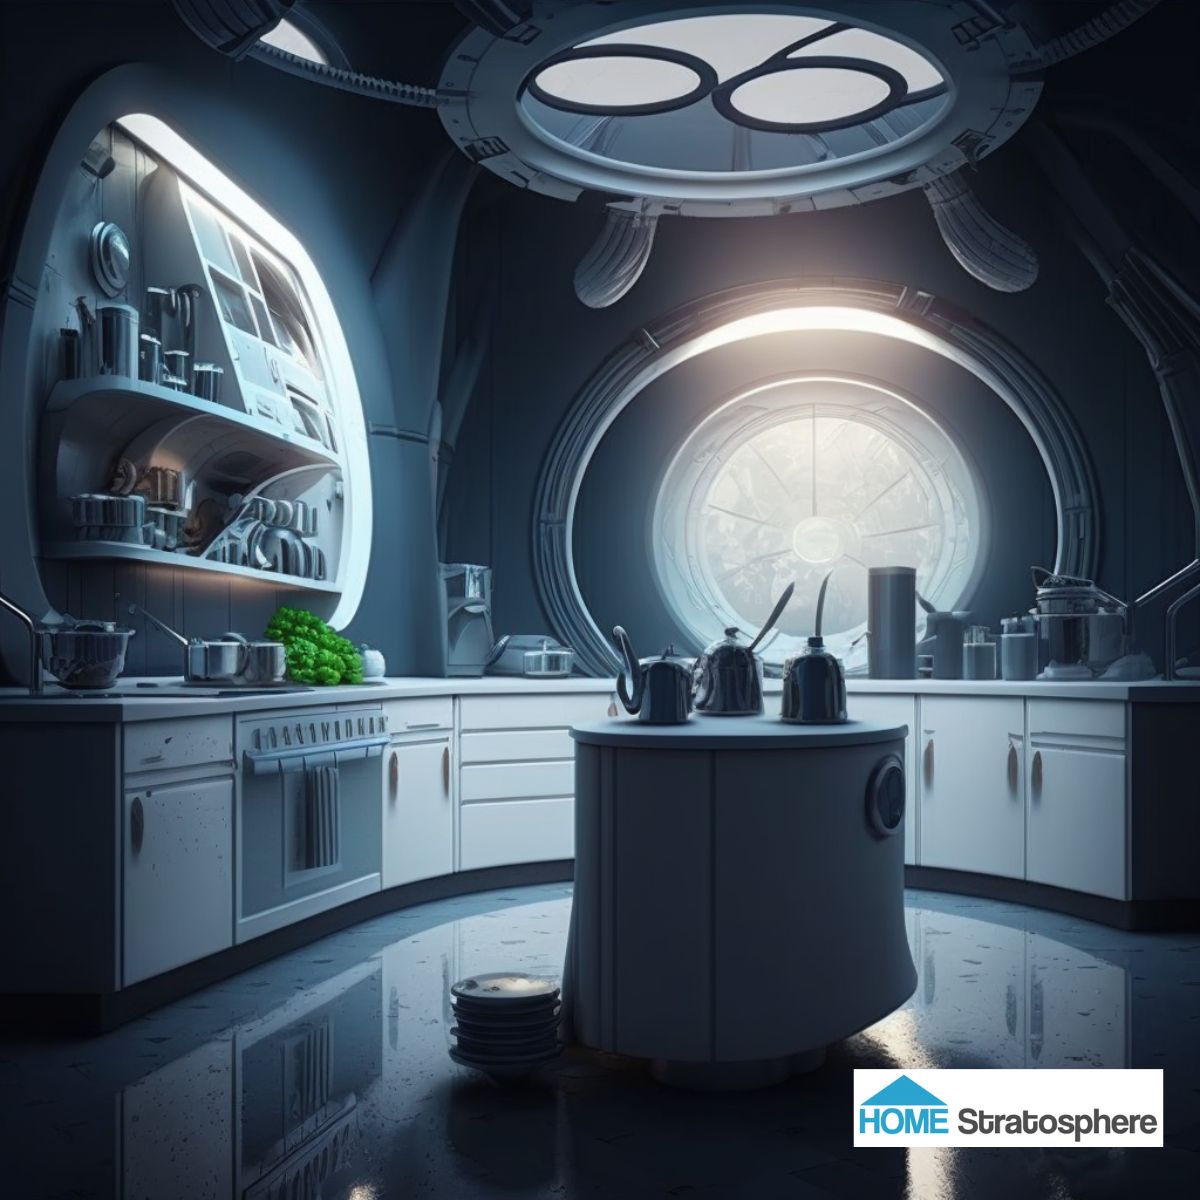 一个长长的圆形厨房柜台朝上望去，窗户与科幻电影中邪恶的星际战斗机的标志性屏幕的开口没有太大区别。抛光的白色和灰色有一种精致的外观，保证从众多的厨房小工具中获得最大的准确性。